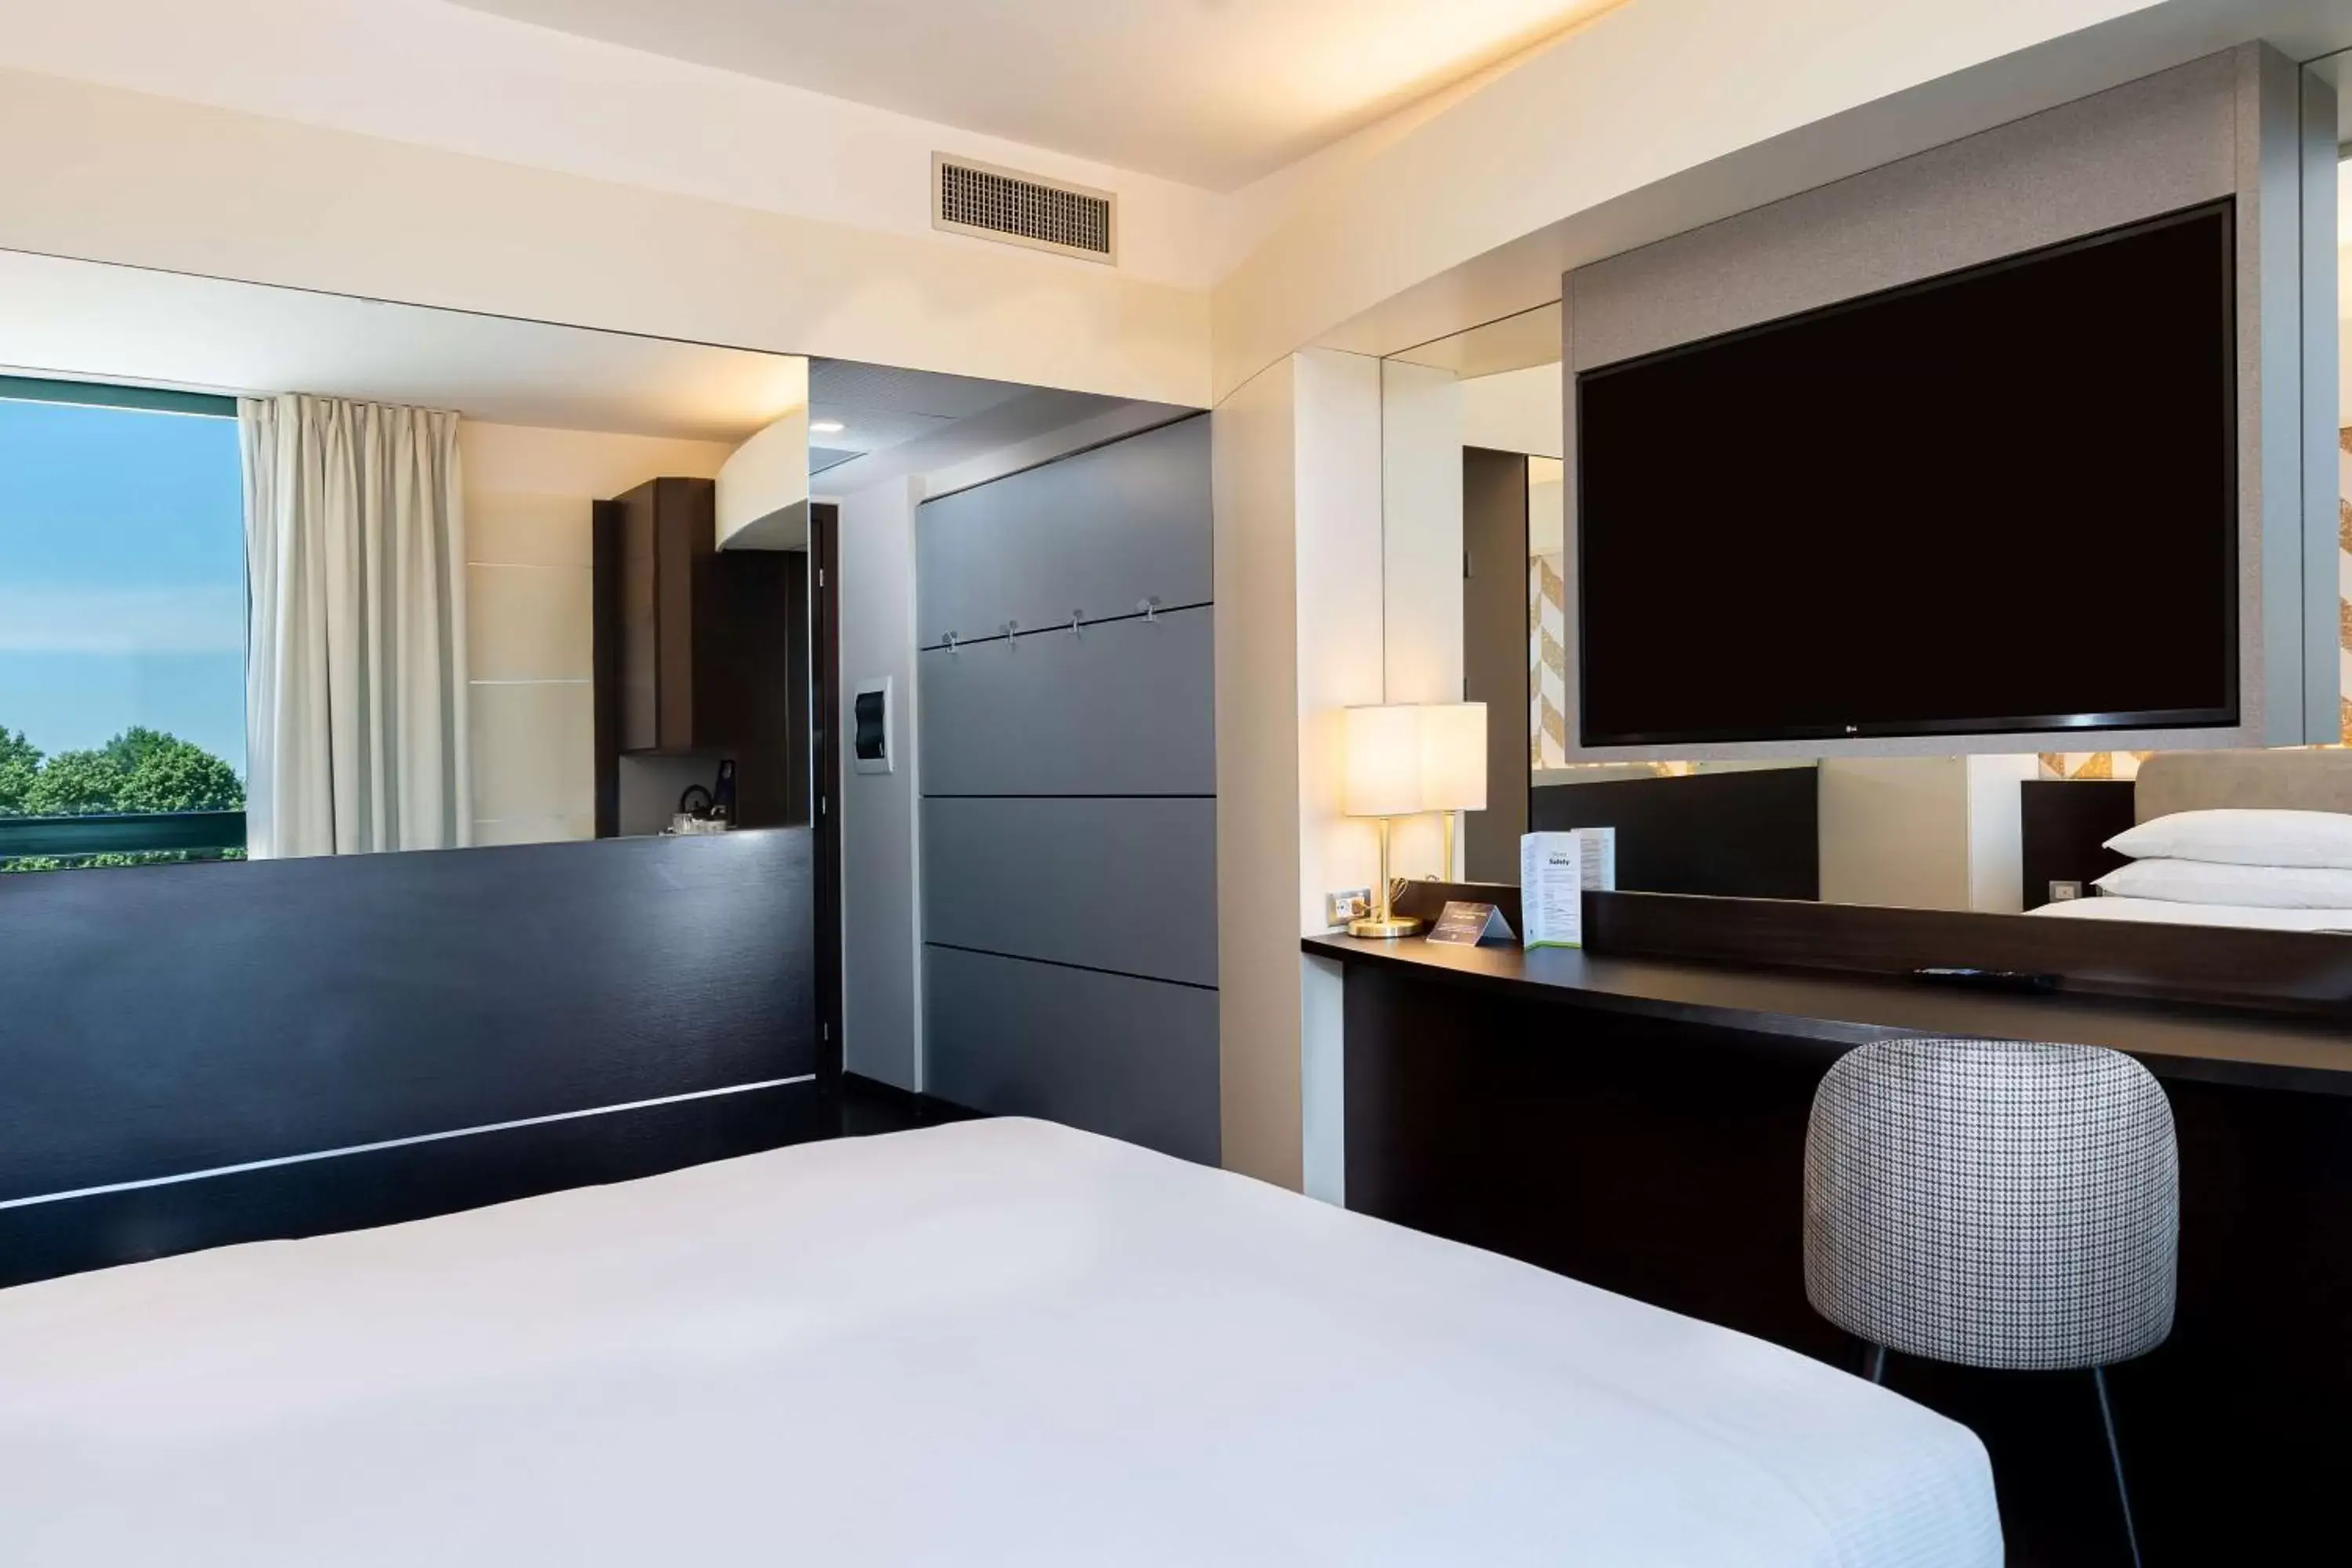 Bedroom, TV/Entertainment Center in Doubletree by Hilton Milan Malpensa Solbiate Olona